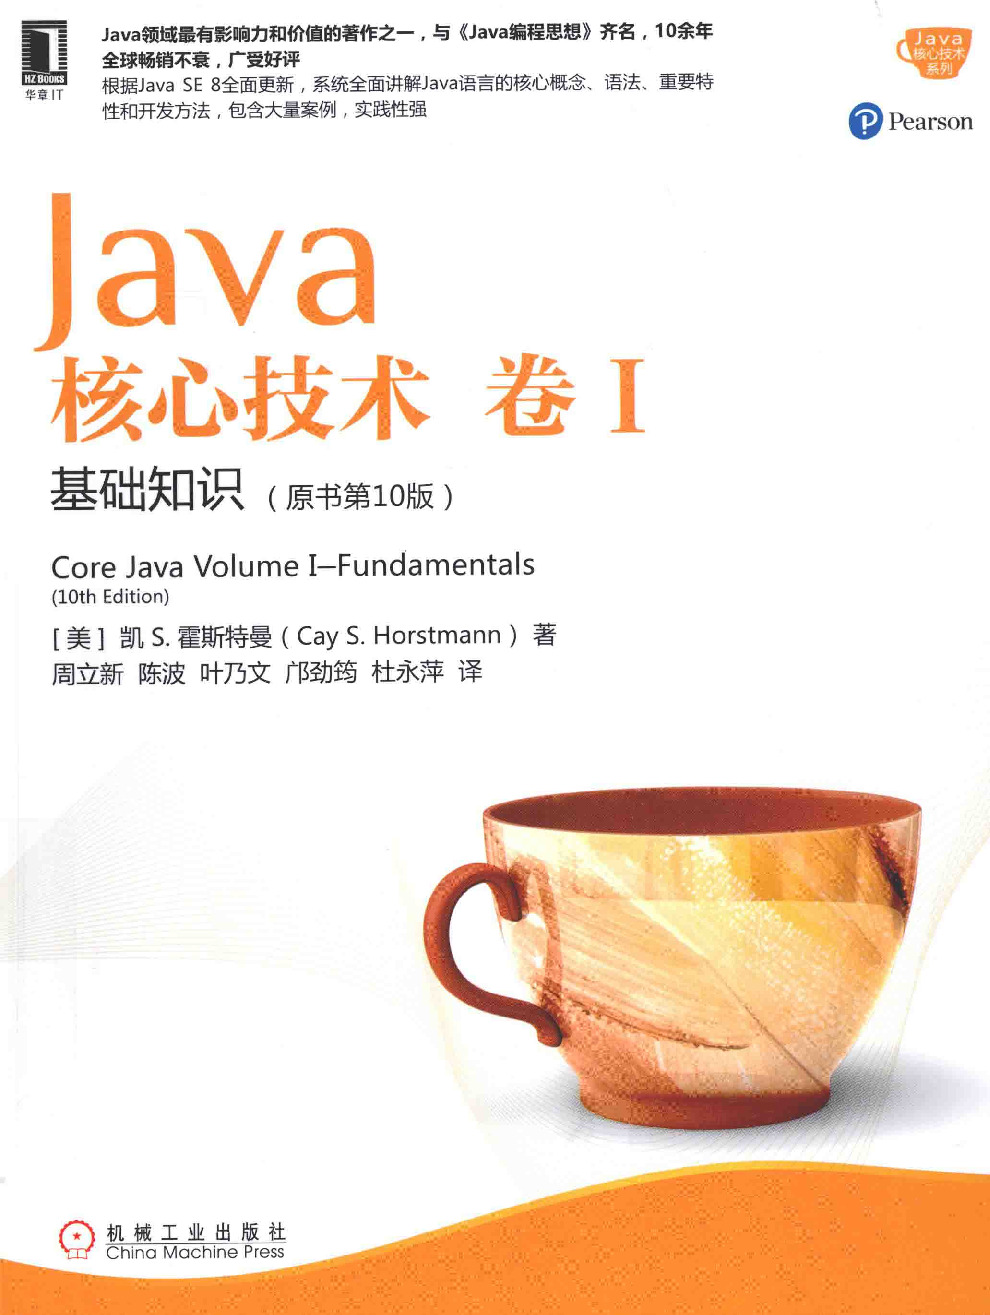 Java核心技术++卷1++基础知识++原书第10版–中文版扫描–带书签已OCR